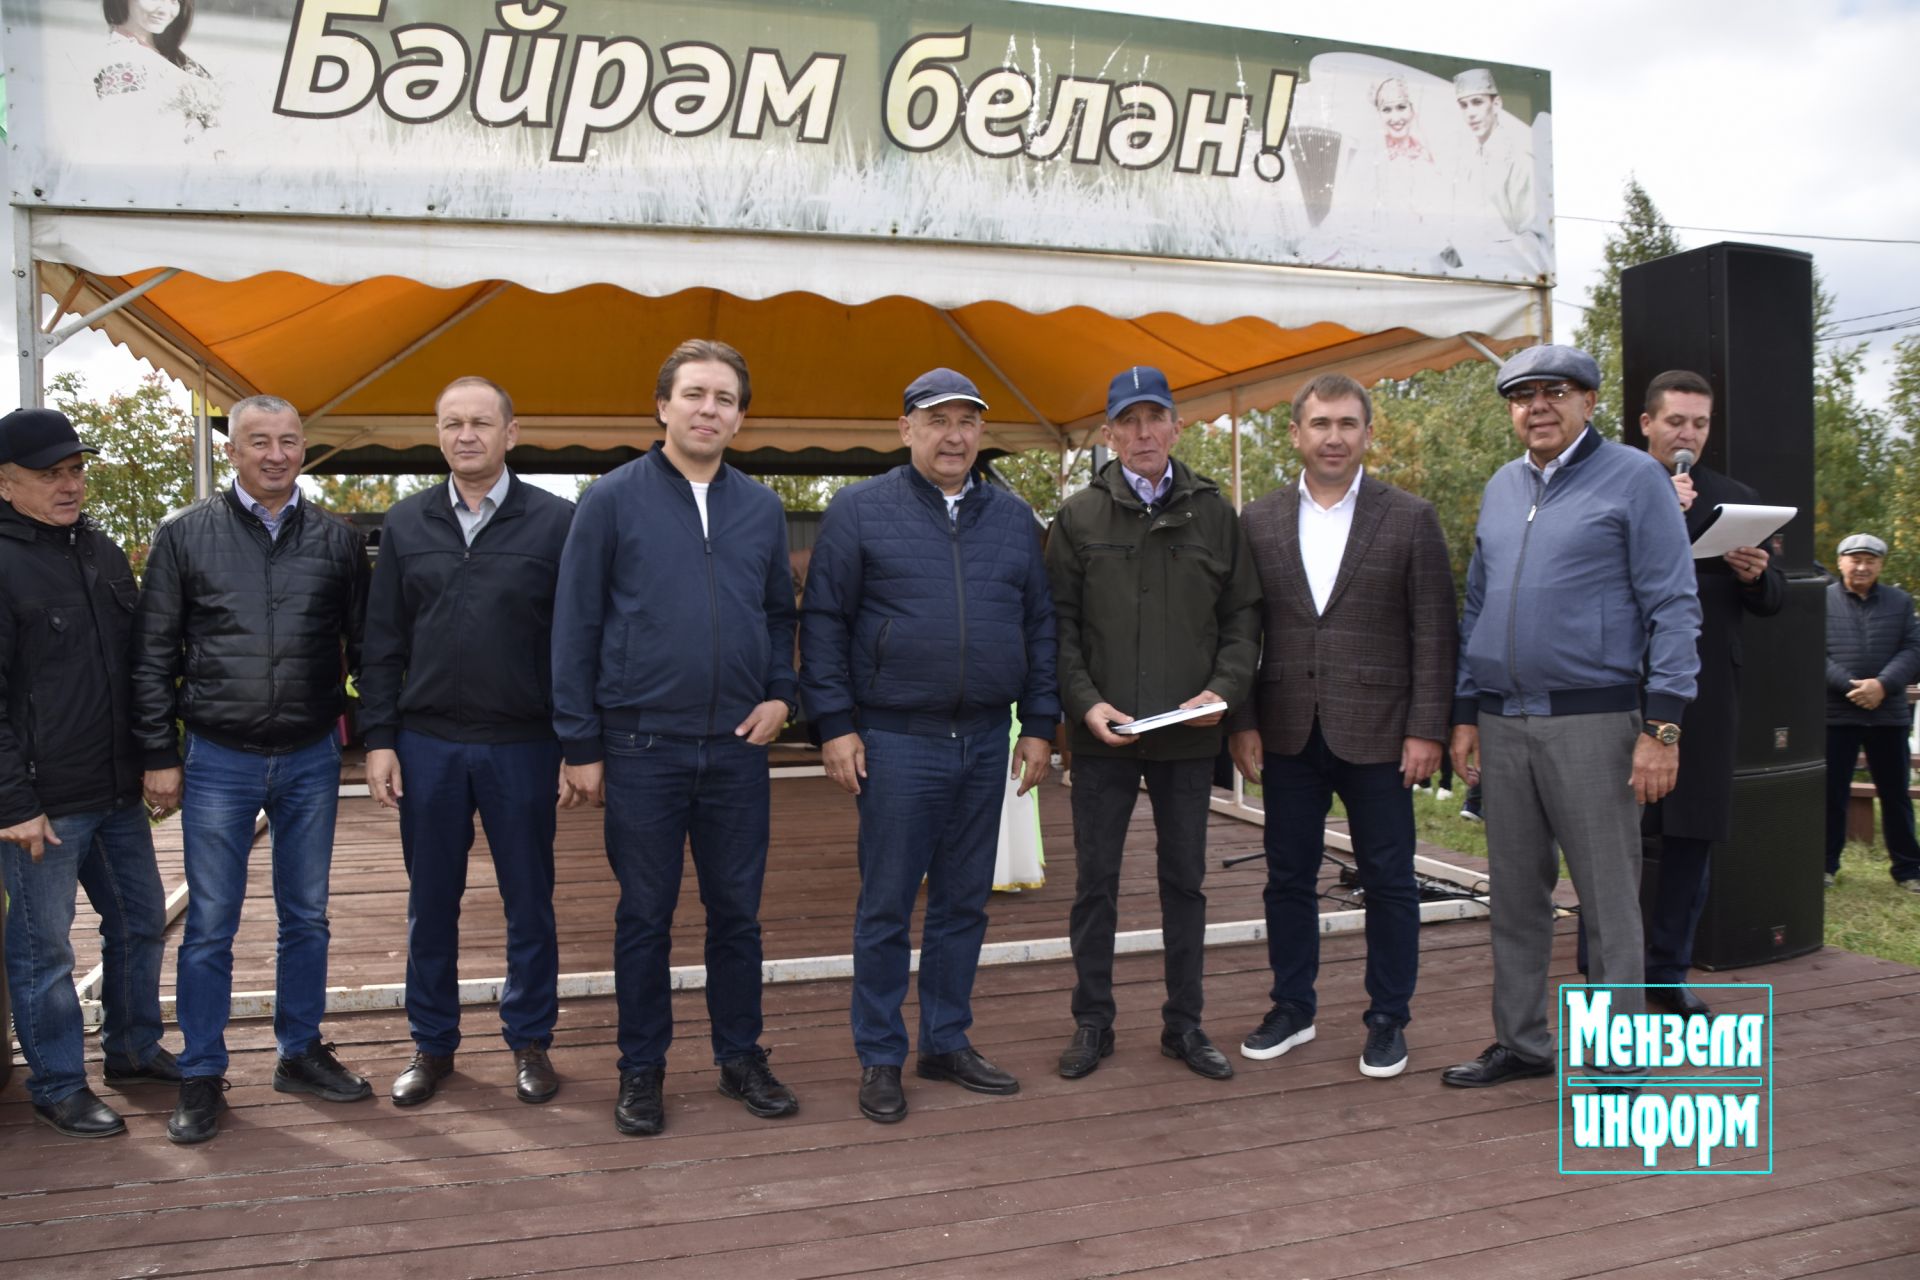 Работники ООО "Заиковский" награжденные в день открытия молочно- товарного животноводческого комплекса